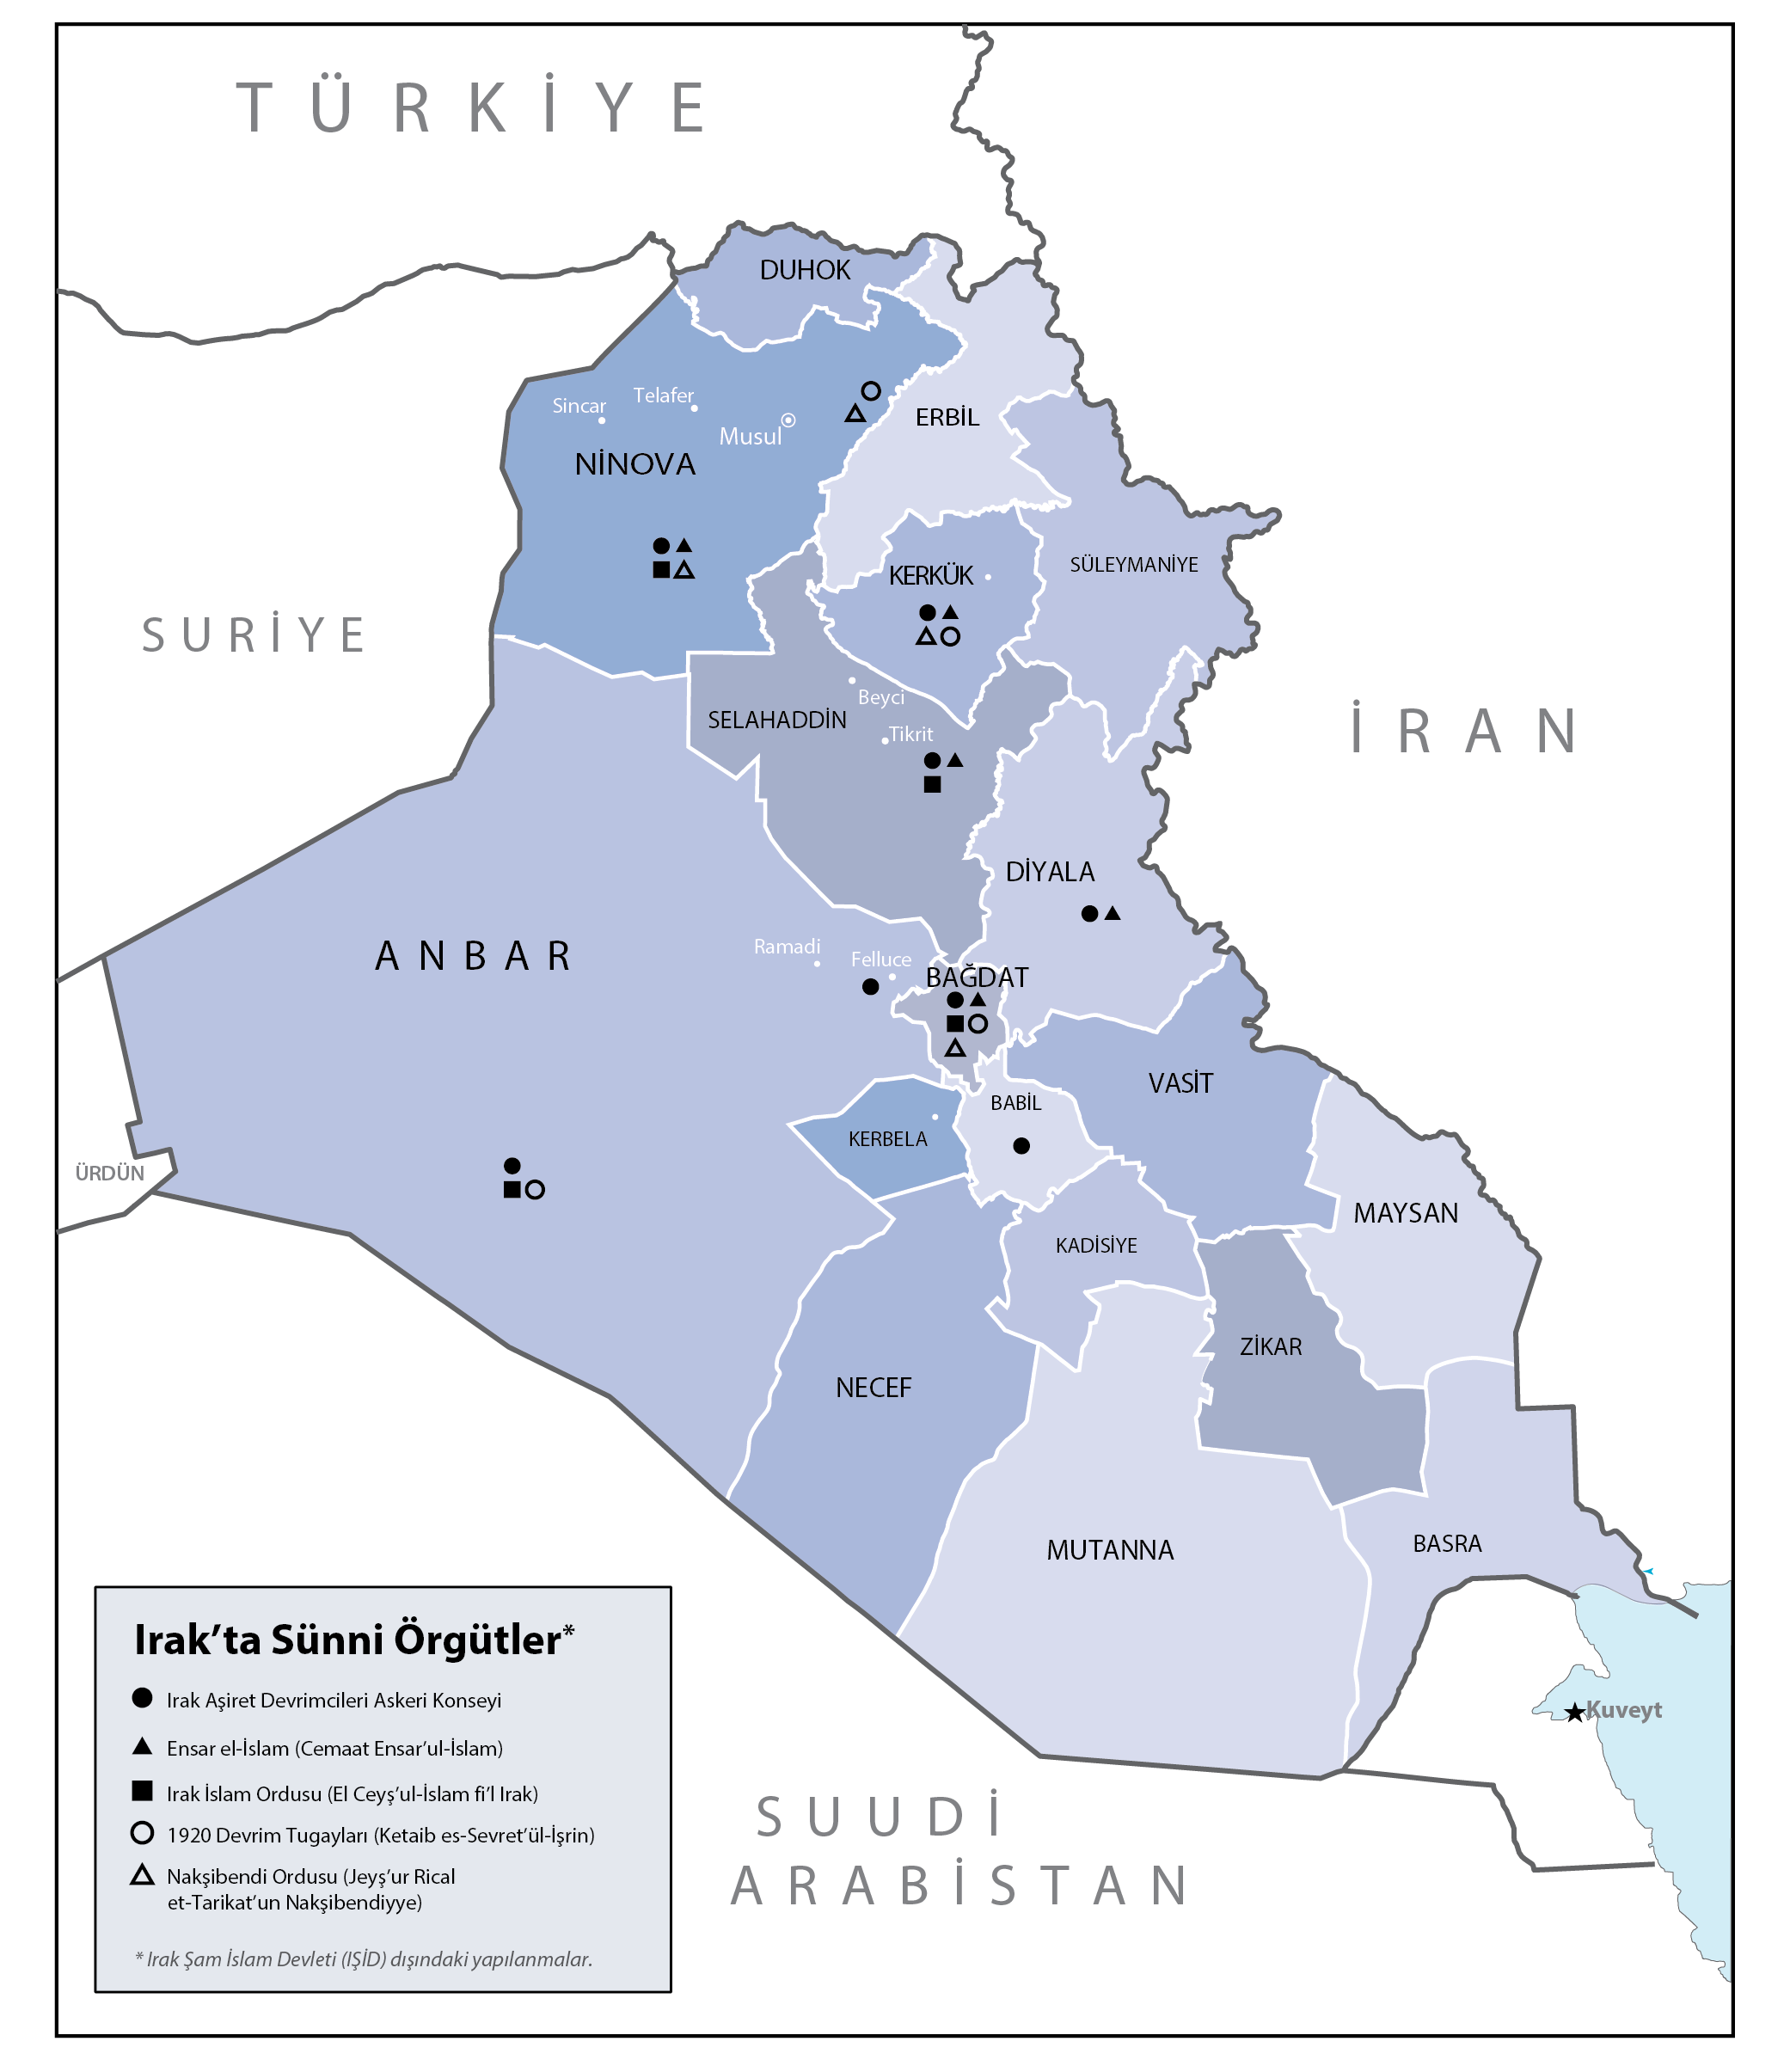 Irak ta yaşanan Sünni İsyanı nın gerçek niteliğinin ortaya konulabilmesi ve buradan hareketle önümüzdeki dönemde neler olabileceğine yönelik bir çıkarsama yapılabilmesi